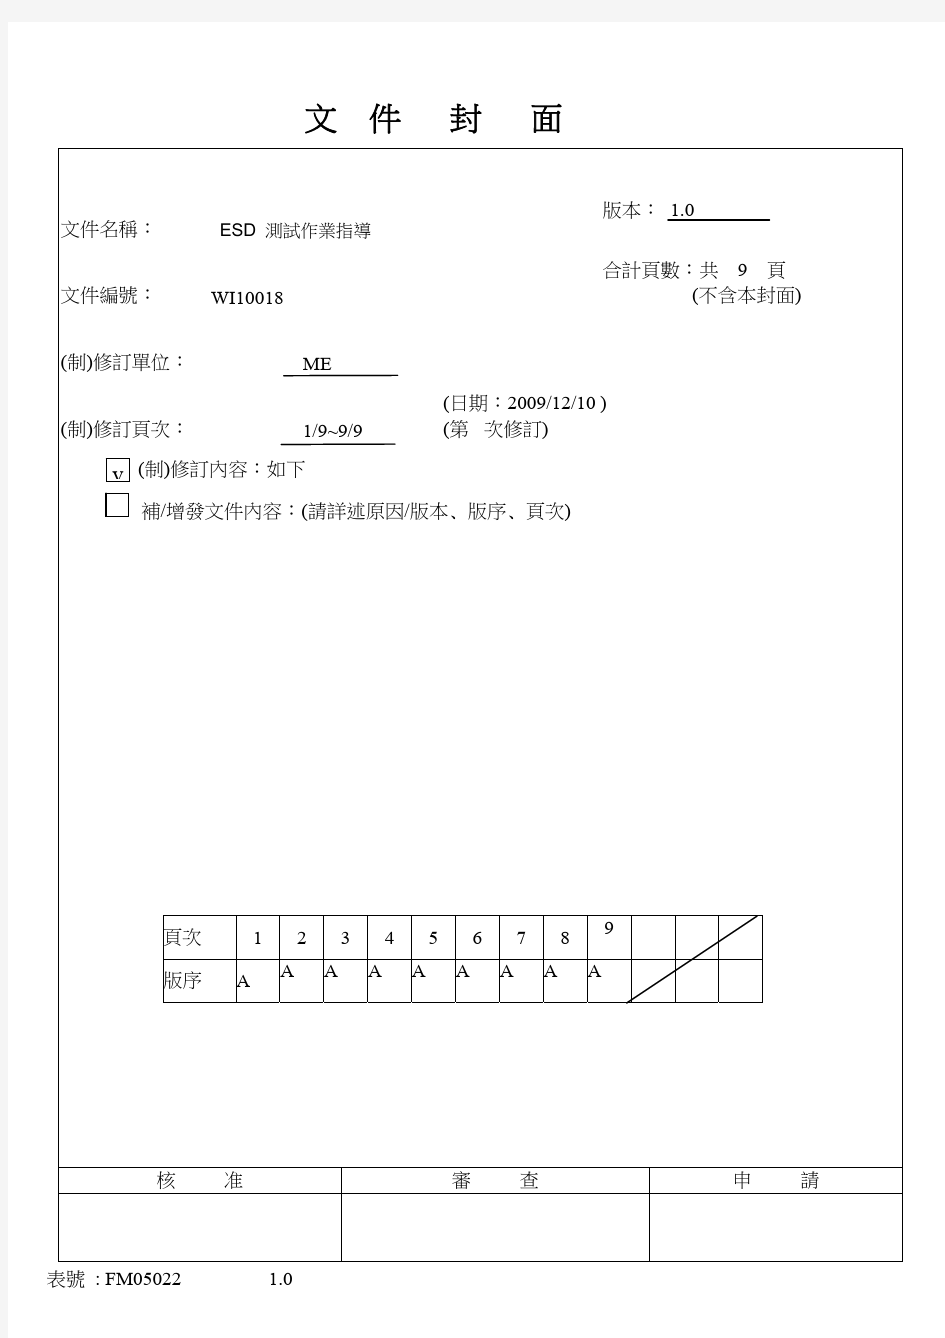 ESD 静电测试作业指导_繁体中文版